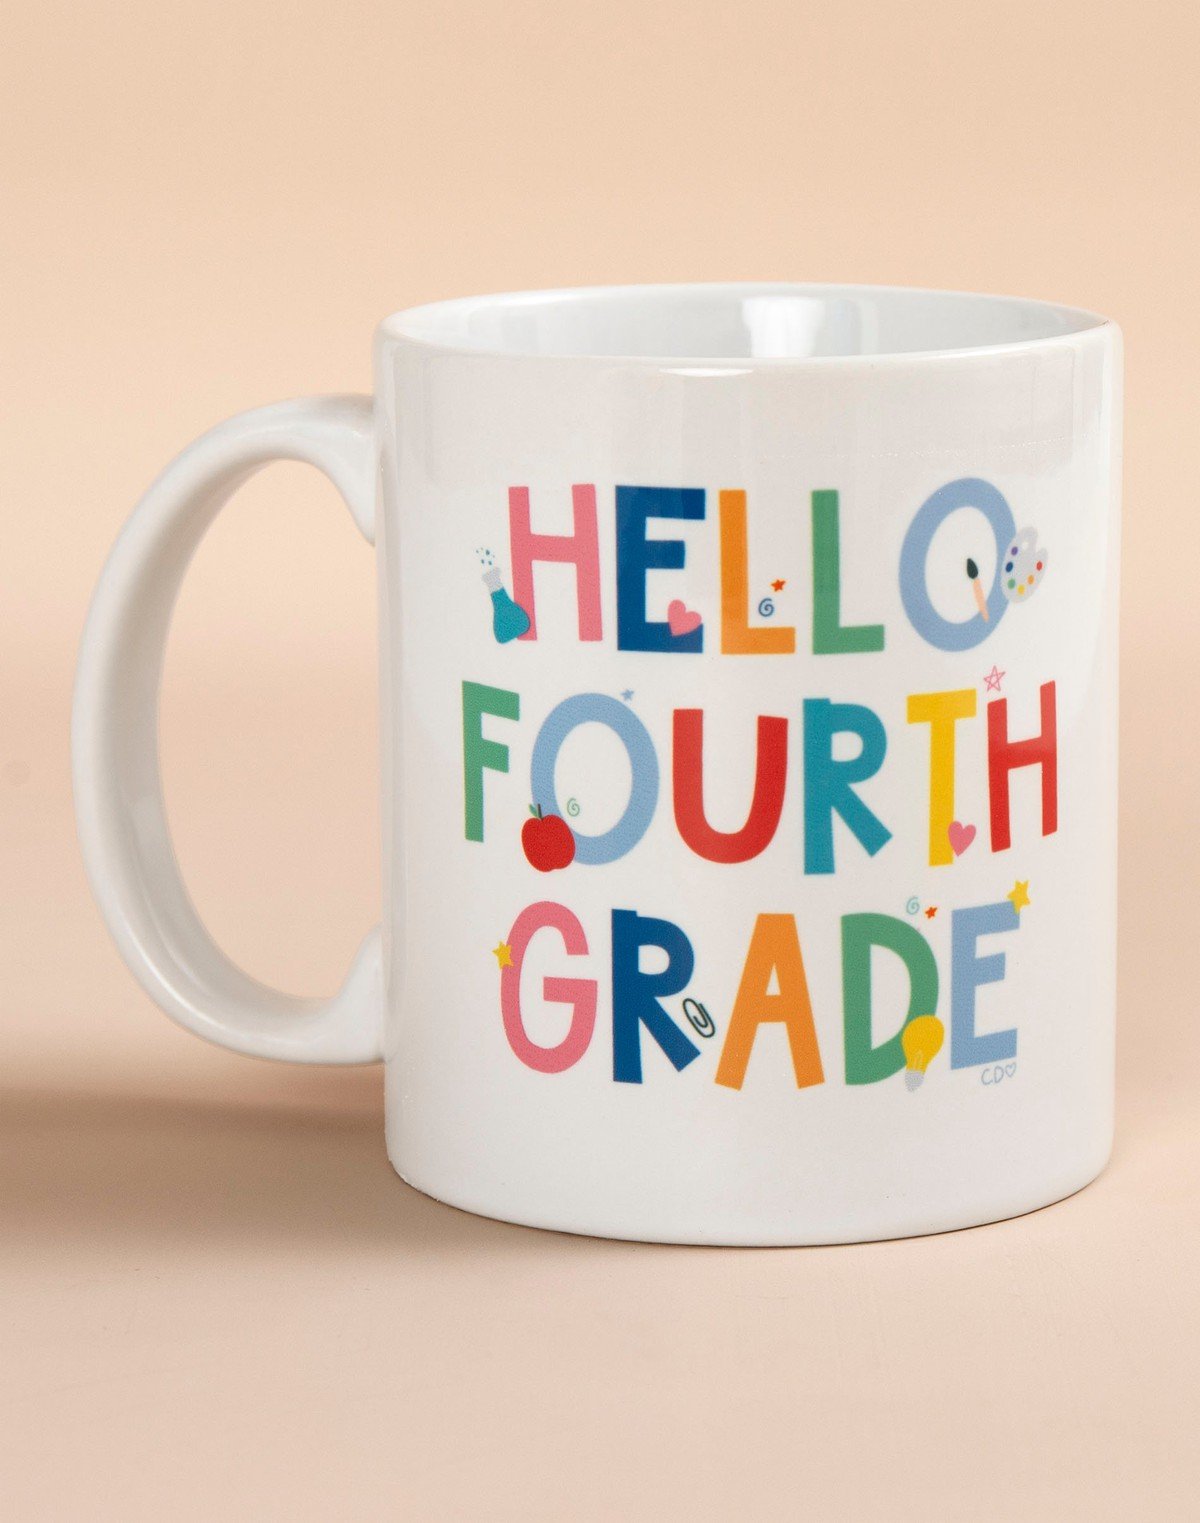 Hello Fourth Grade Mug item